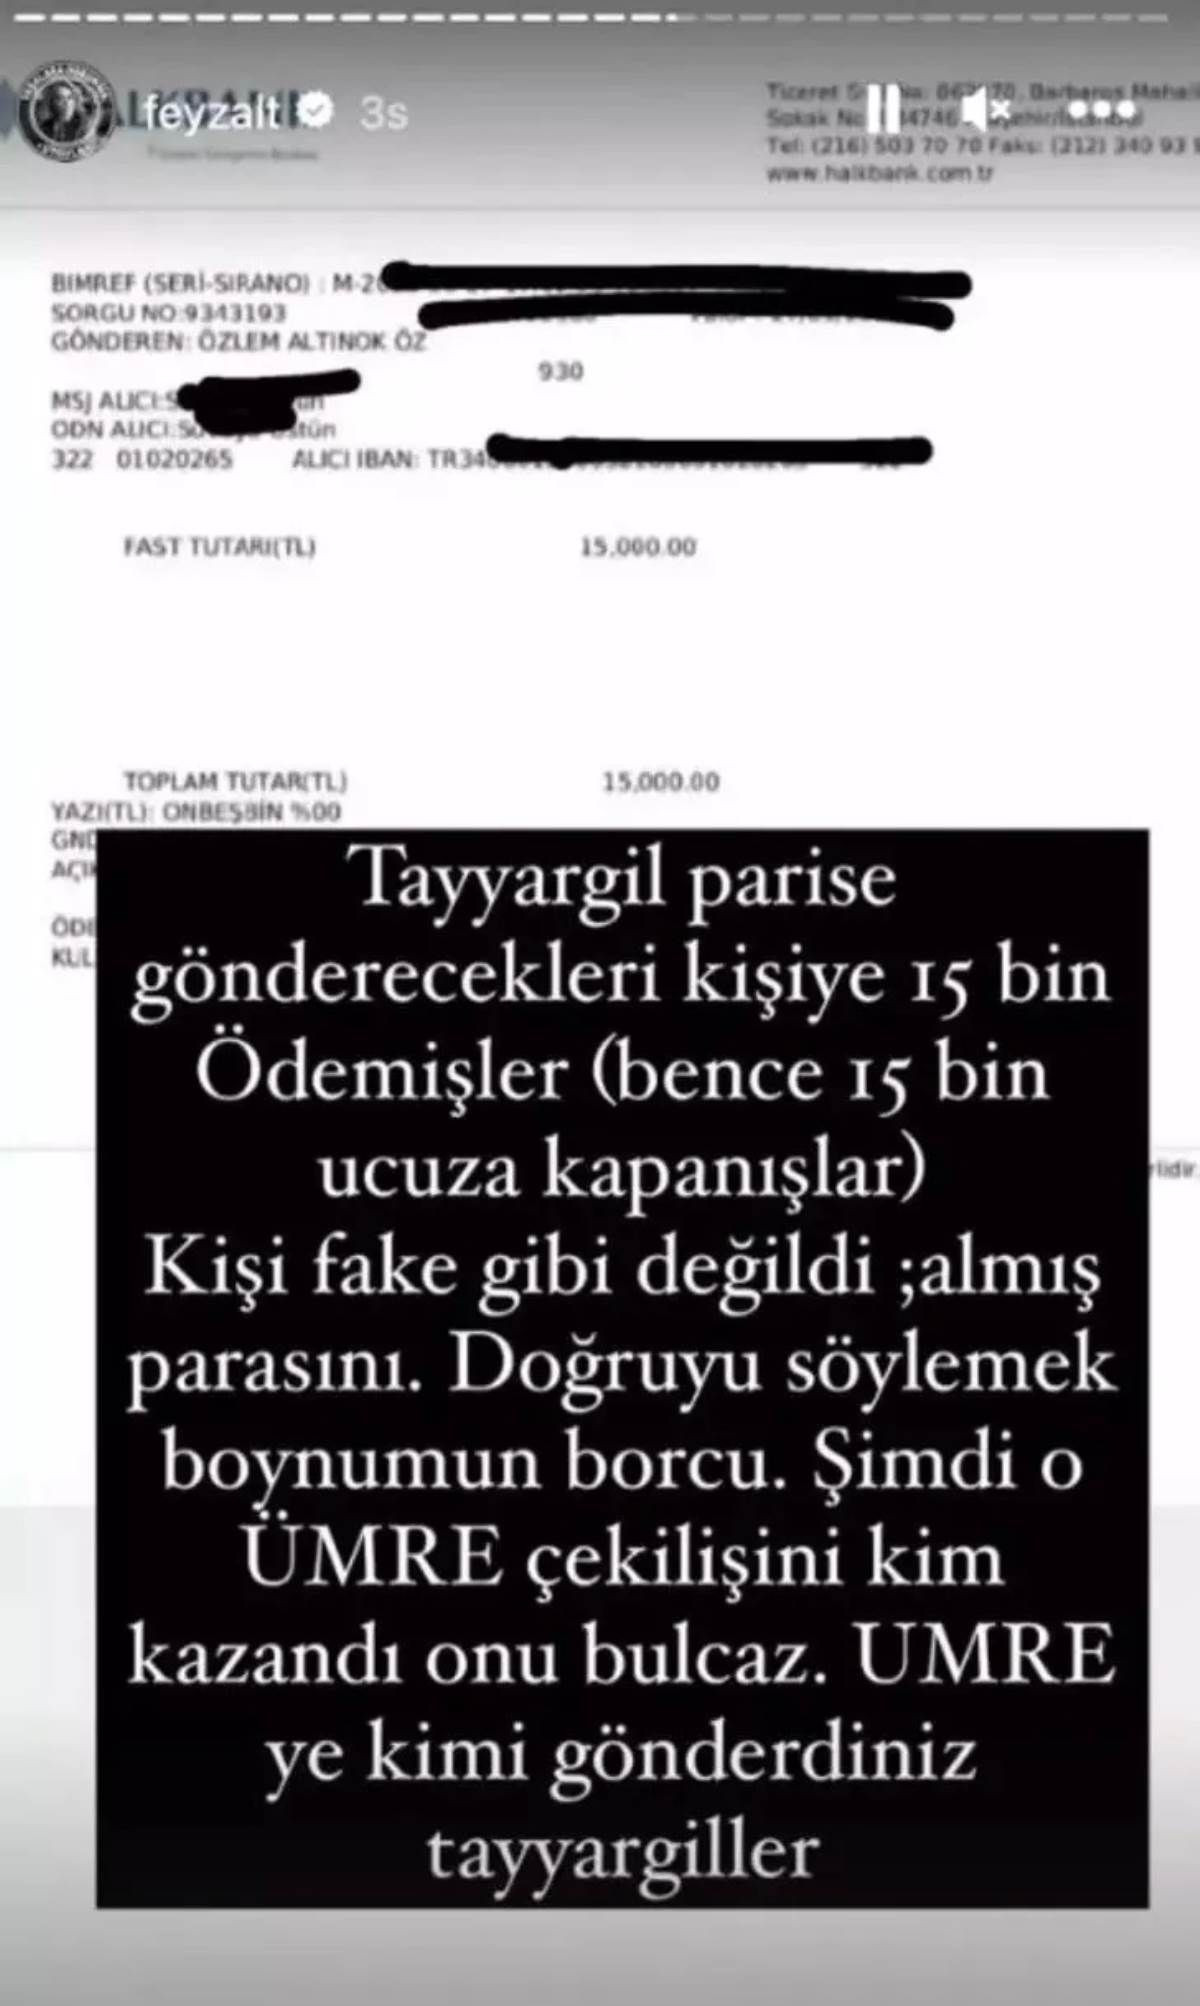 Umre çekilişi yapan Özlem Öz ve Tayyar Öz çiftine dair gerçeği avukat Feyza Altun ortaya çıkardı - Sayfa 2